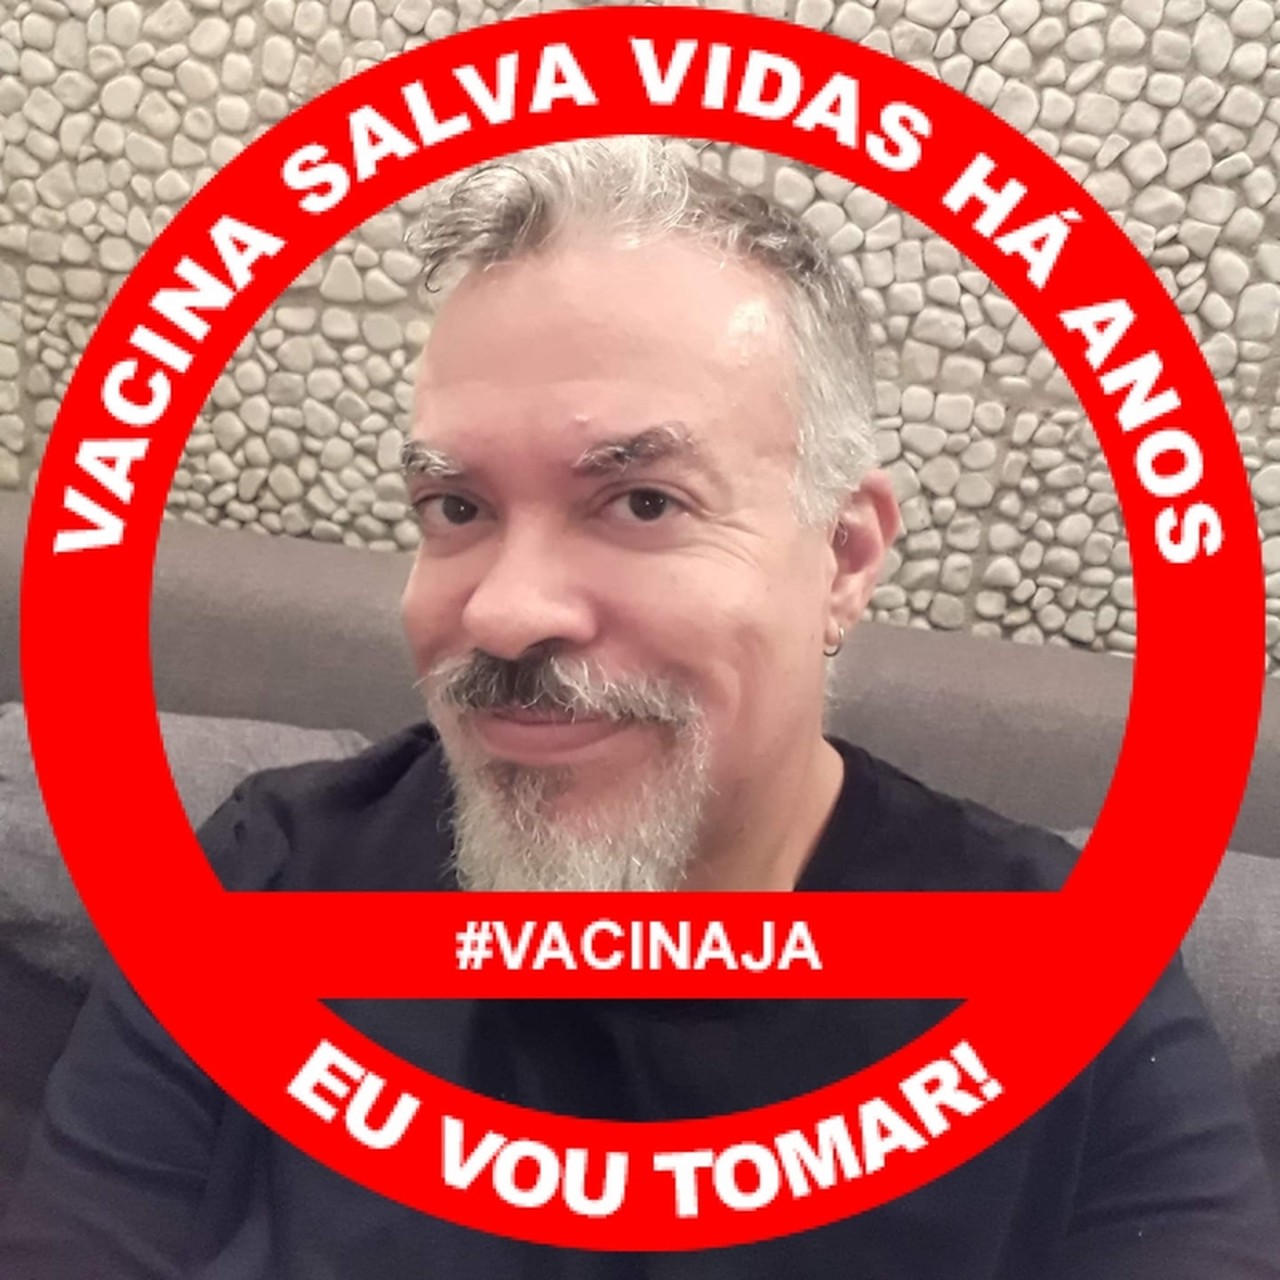 Fábio Fernandes's profile picture